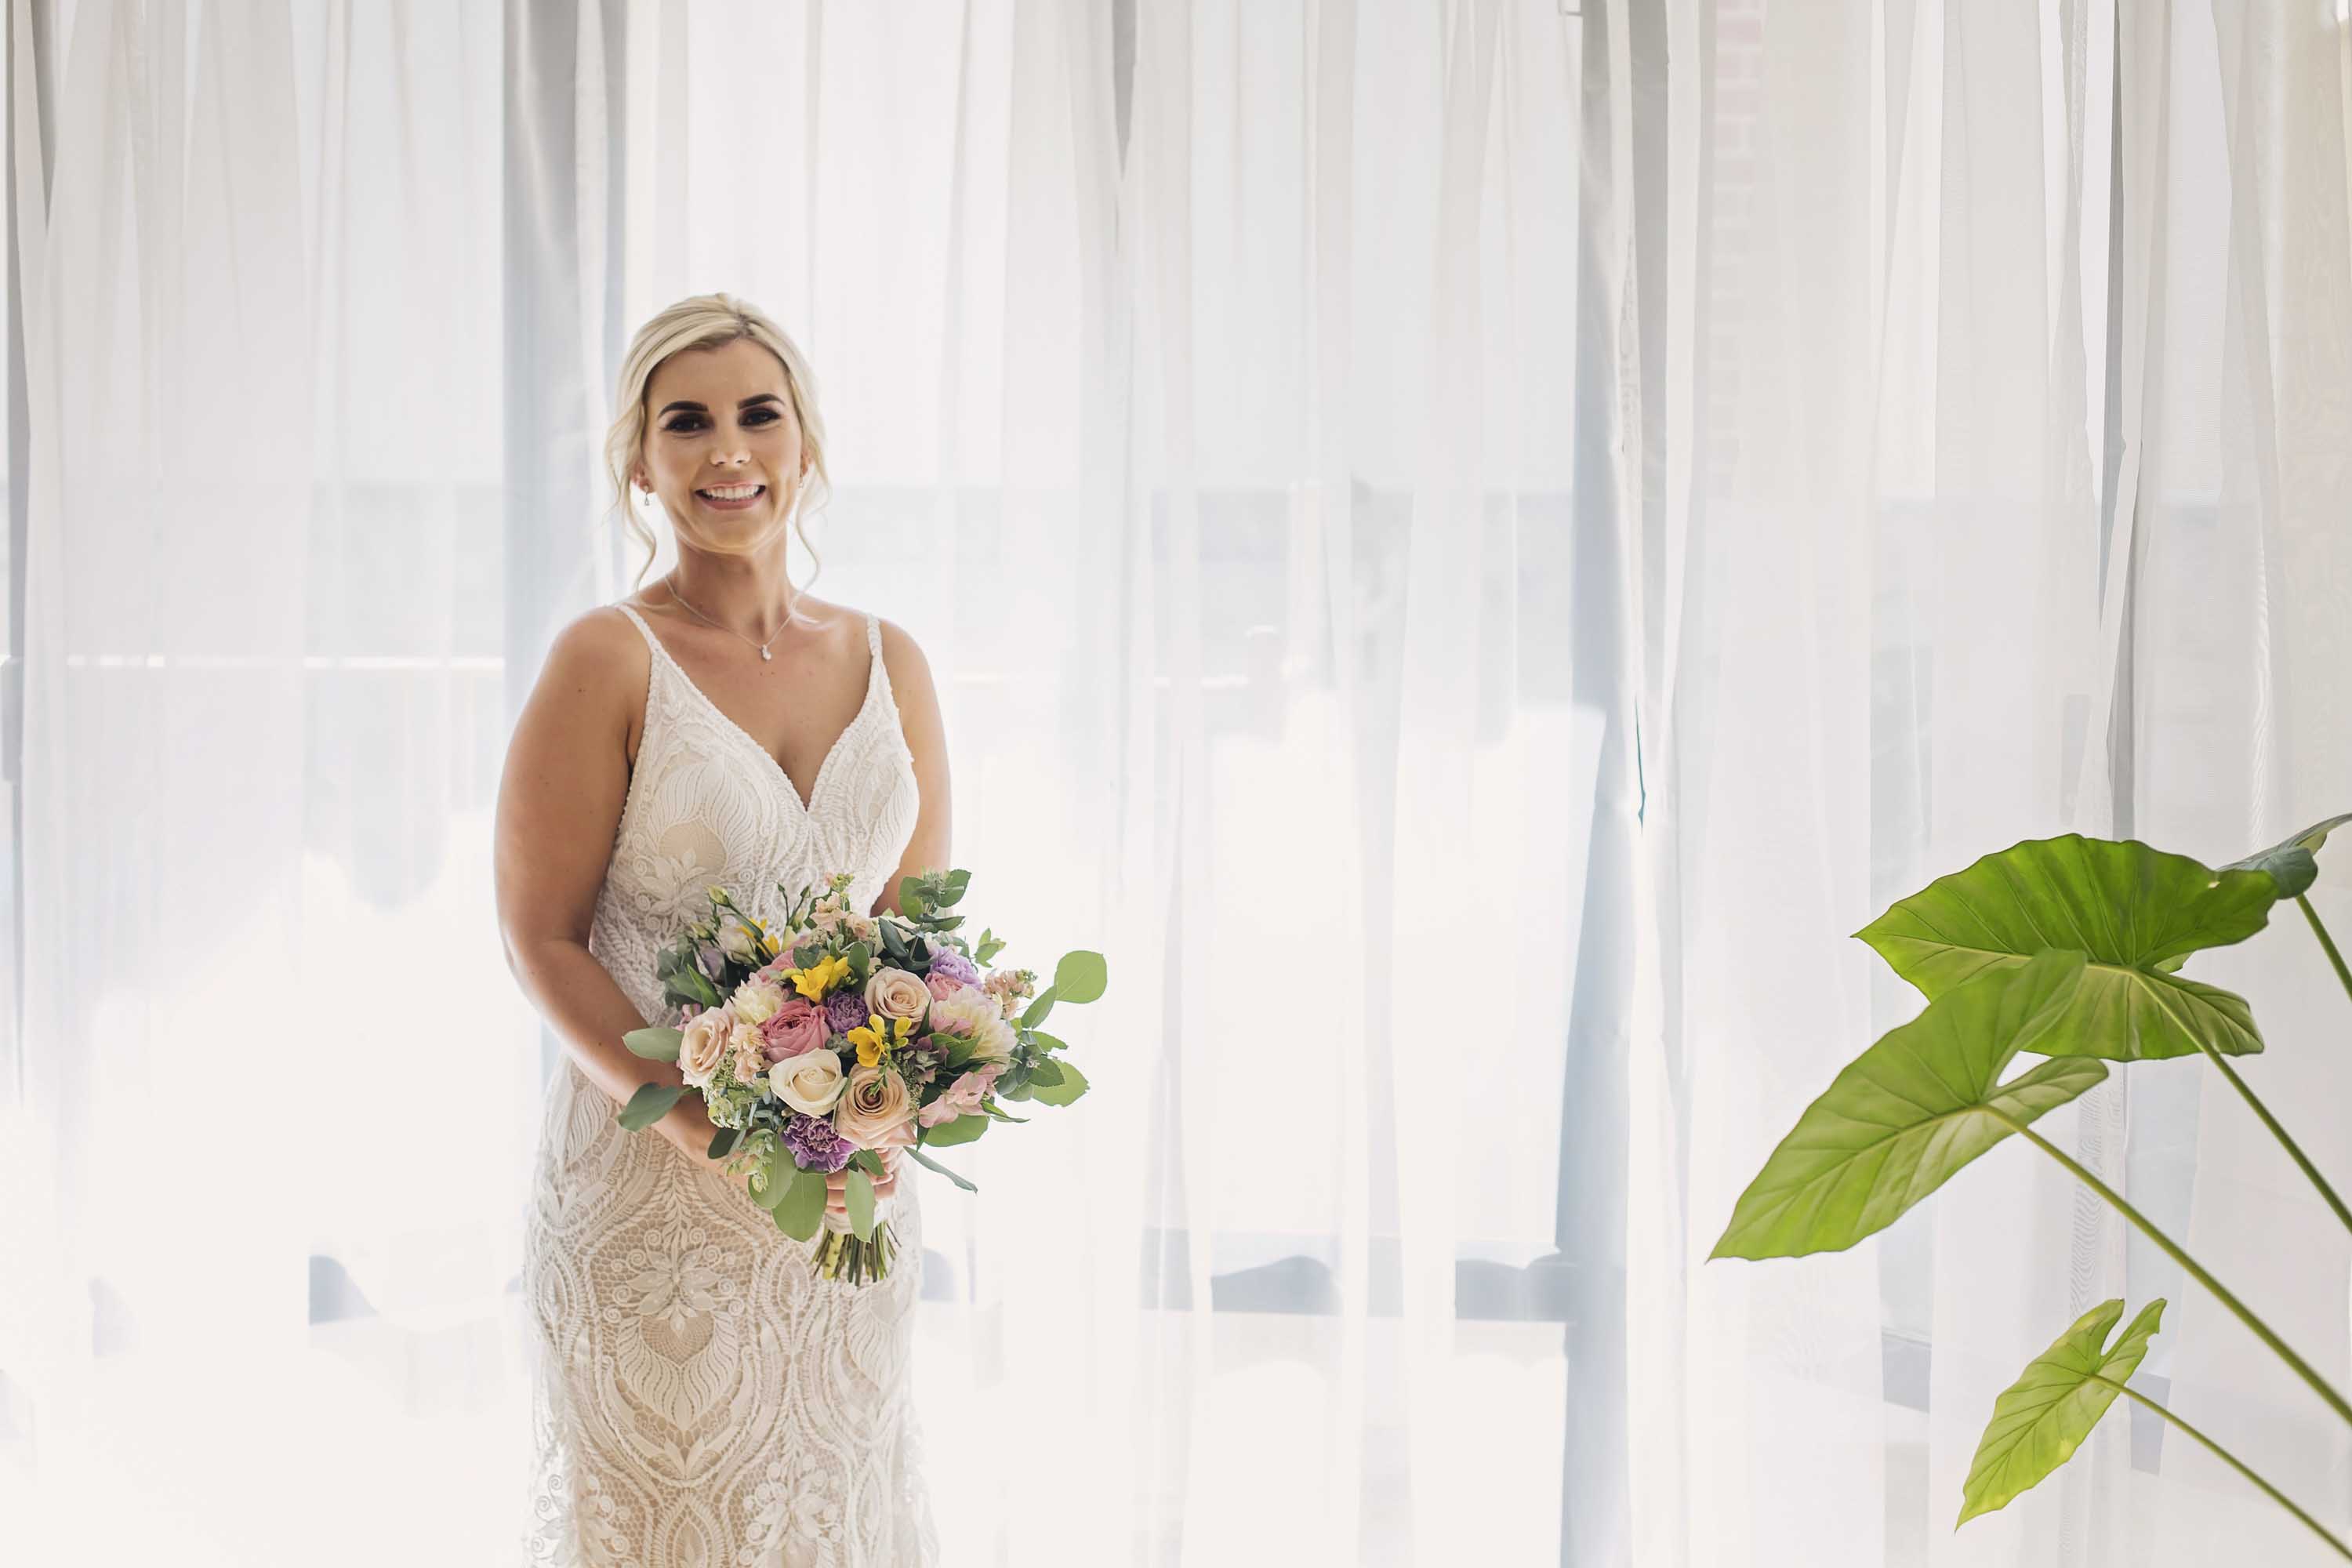 Bride standing in front of window